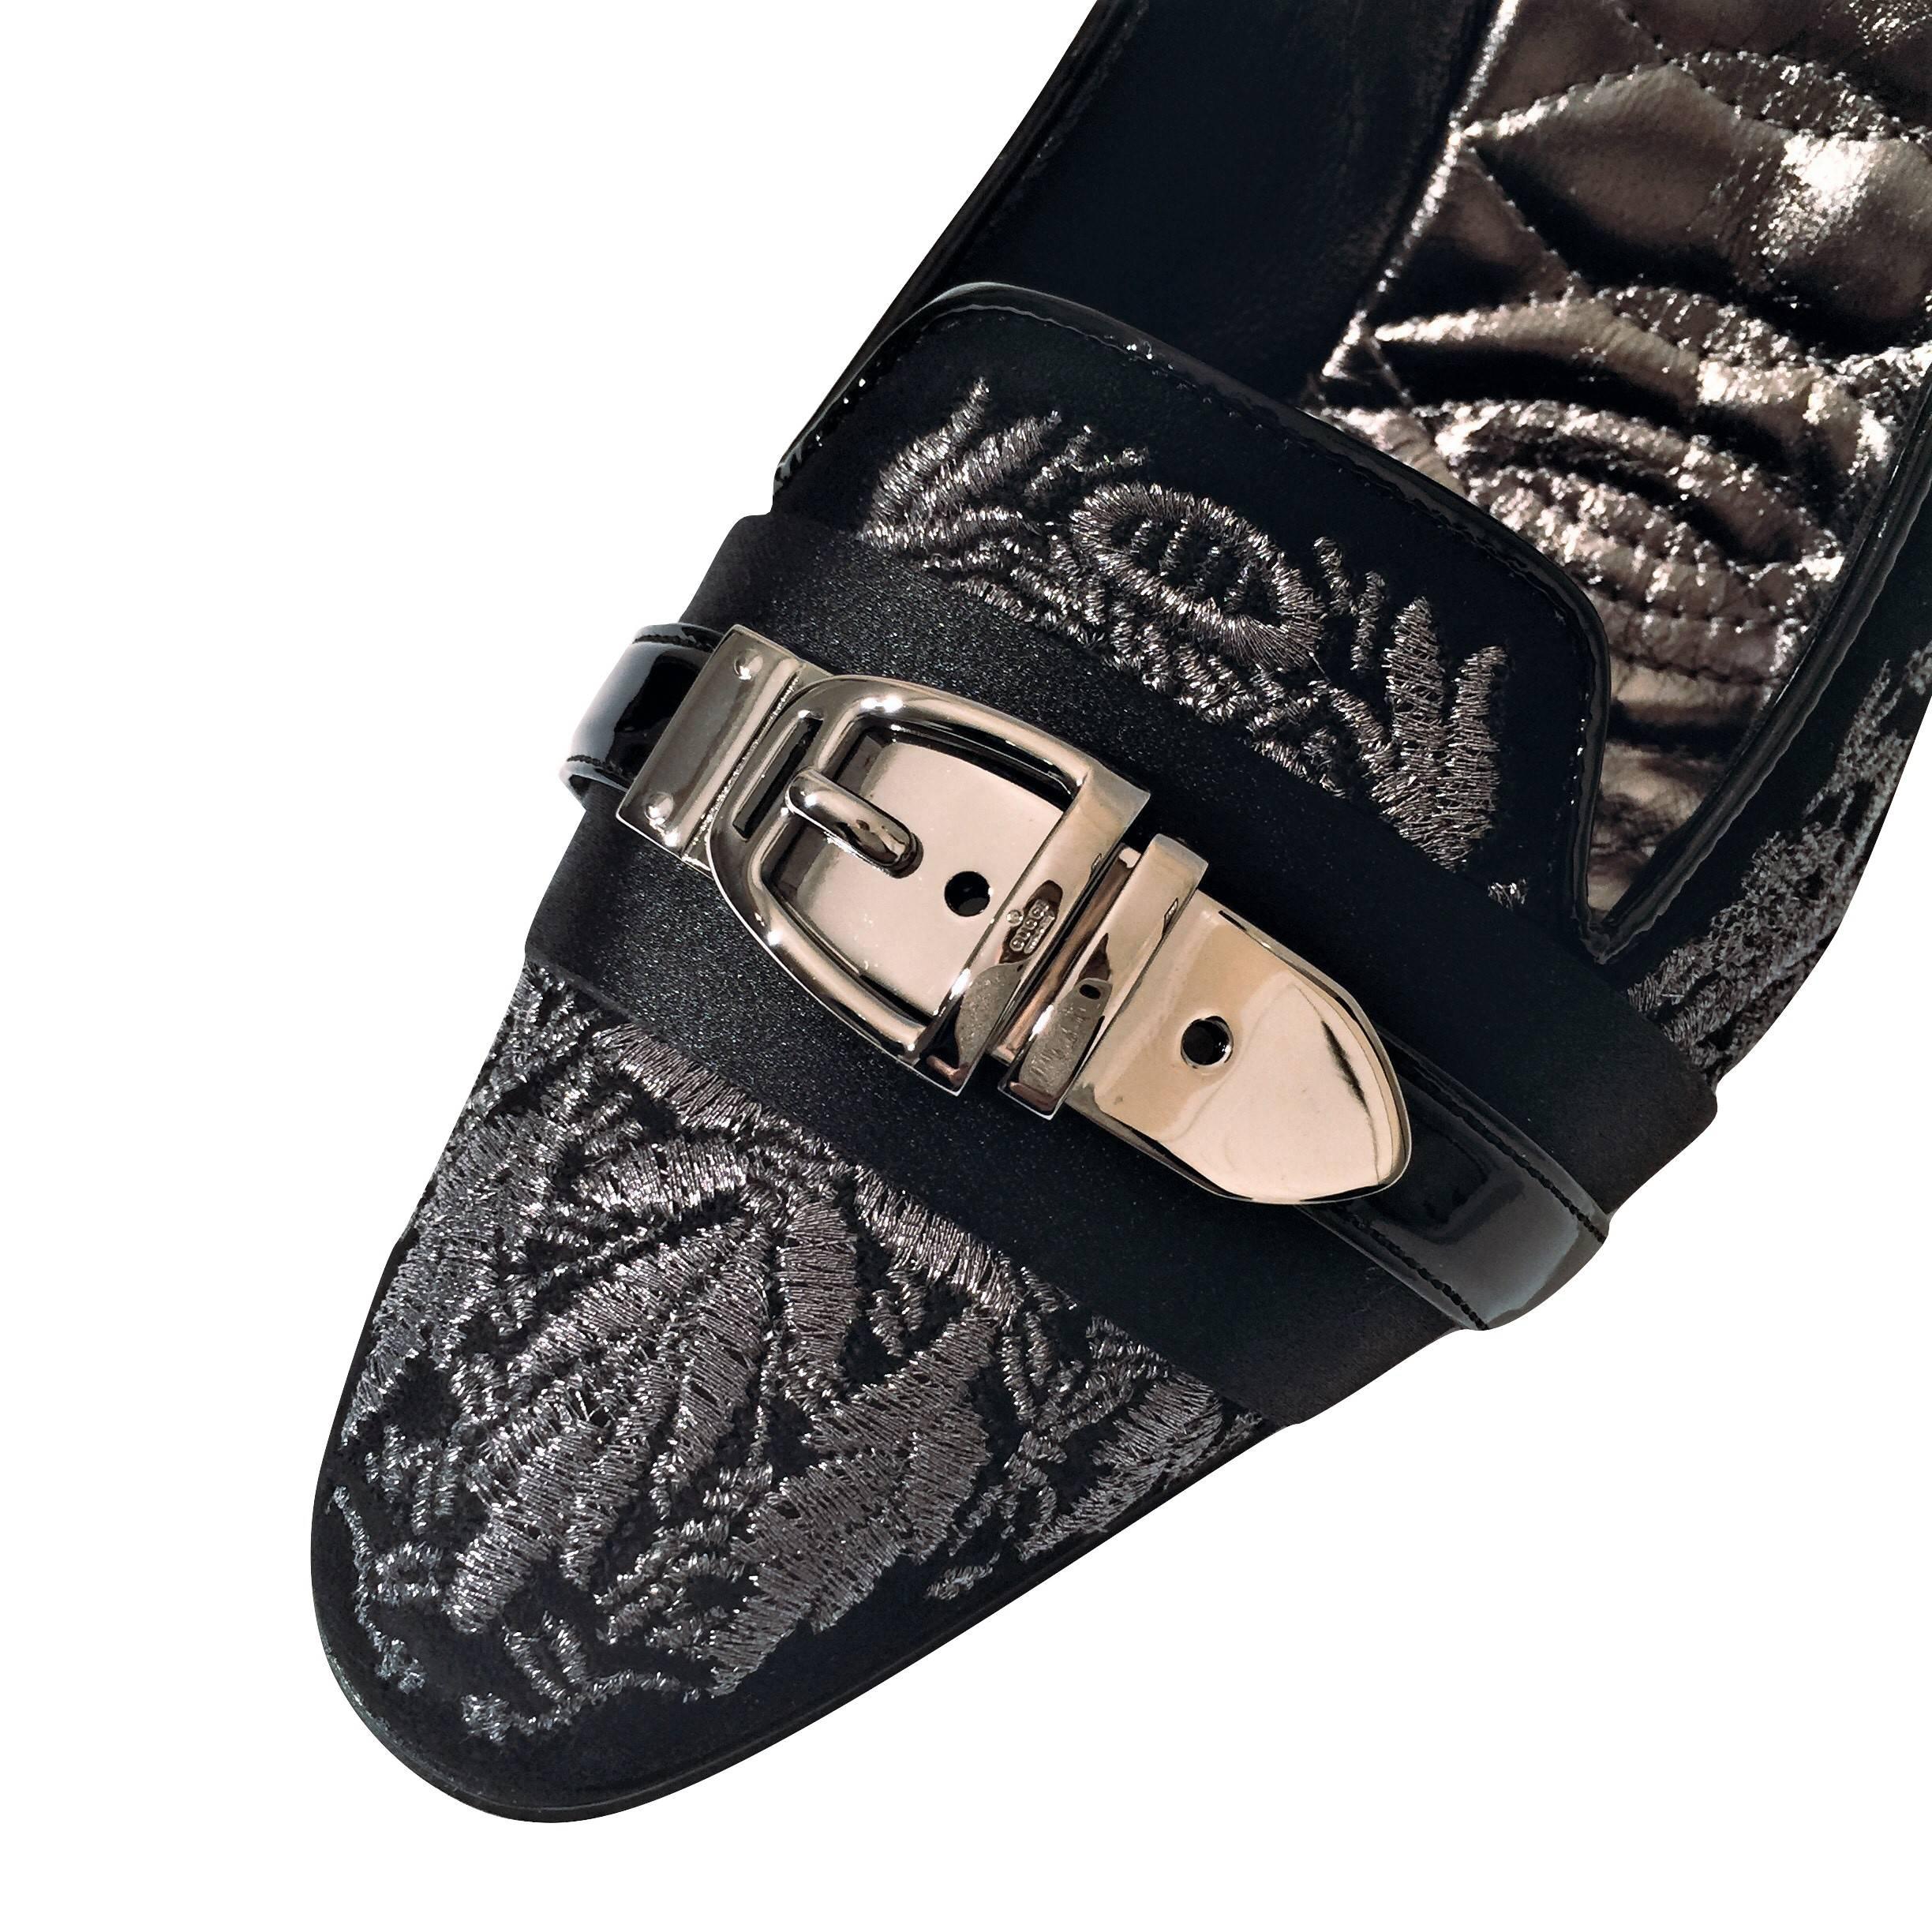 New Gucci Runway Suede Brocade Buckle Heels Pumps Sz 38 10